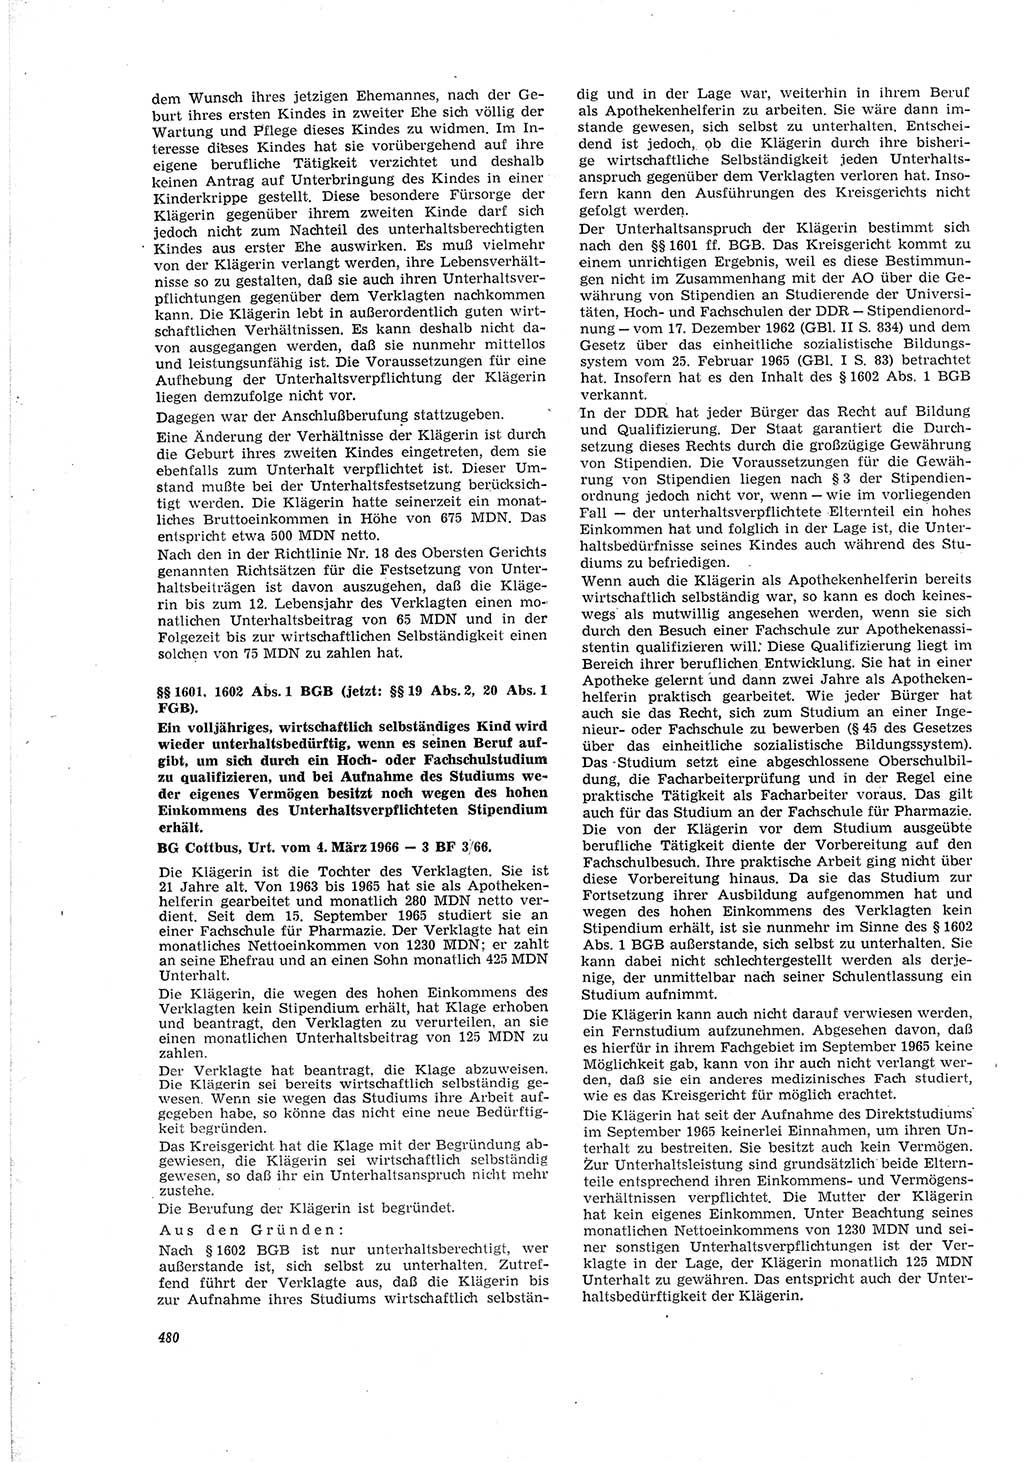 Neue Justiz (NJ), Zeitschrift für Recht und Rechtswissenschaft [Deutsche Demokratische Republik (DDR)], 20. Jahrgang 1966, Seite 480 (NJ DDR 1966, S. 480)